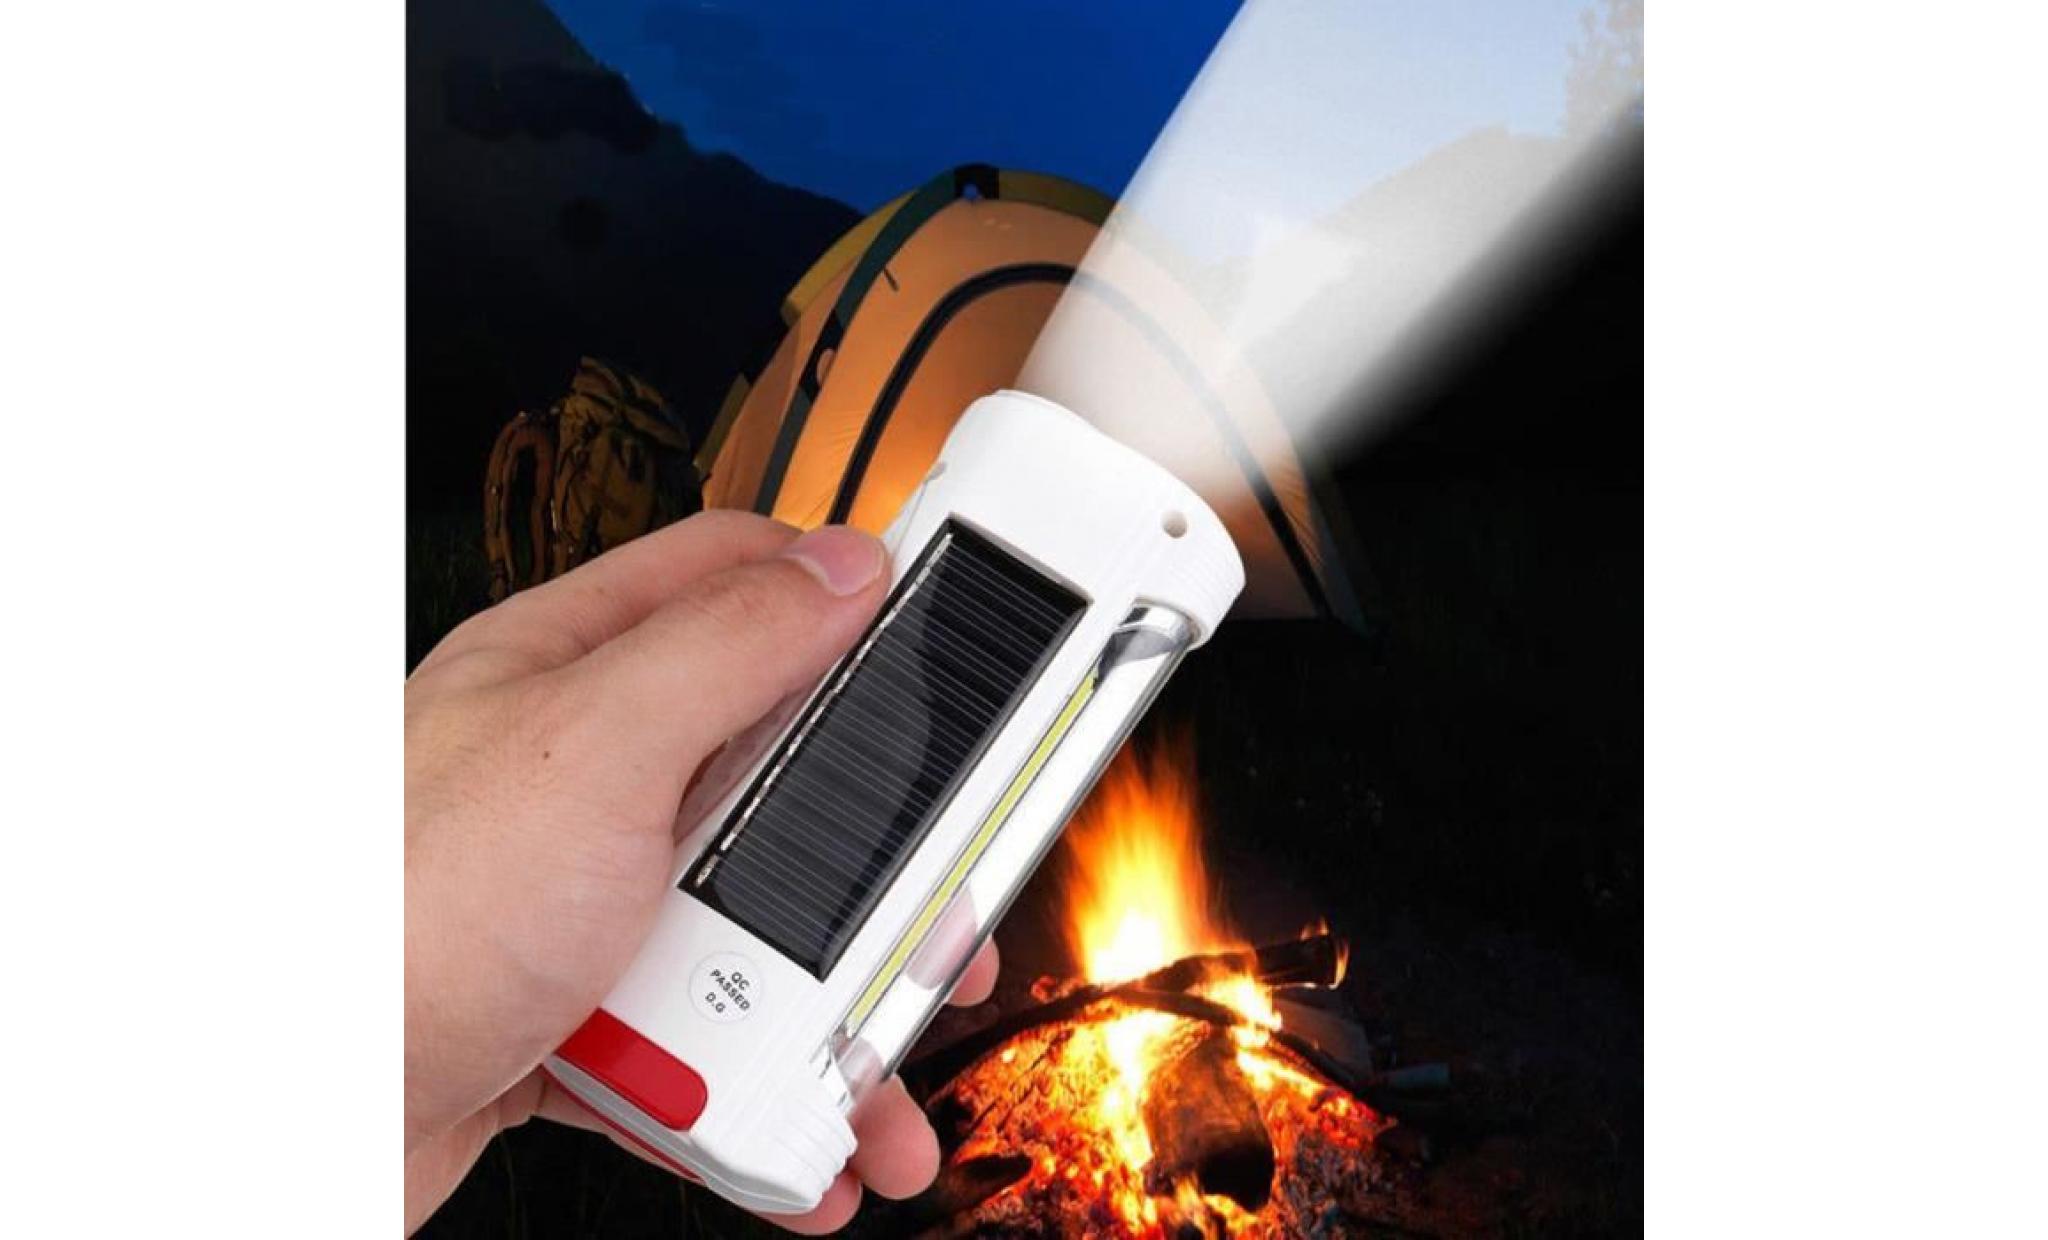 usb énergie solaire rechargeable lampe de poche led camping randonnée lanterne li778@